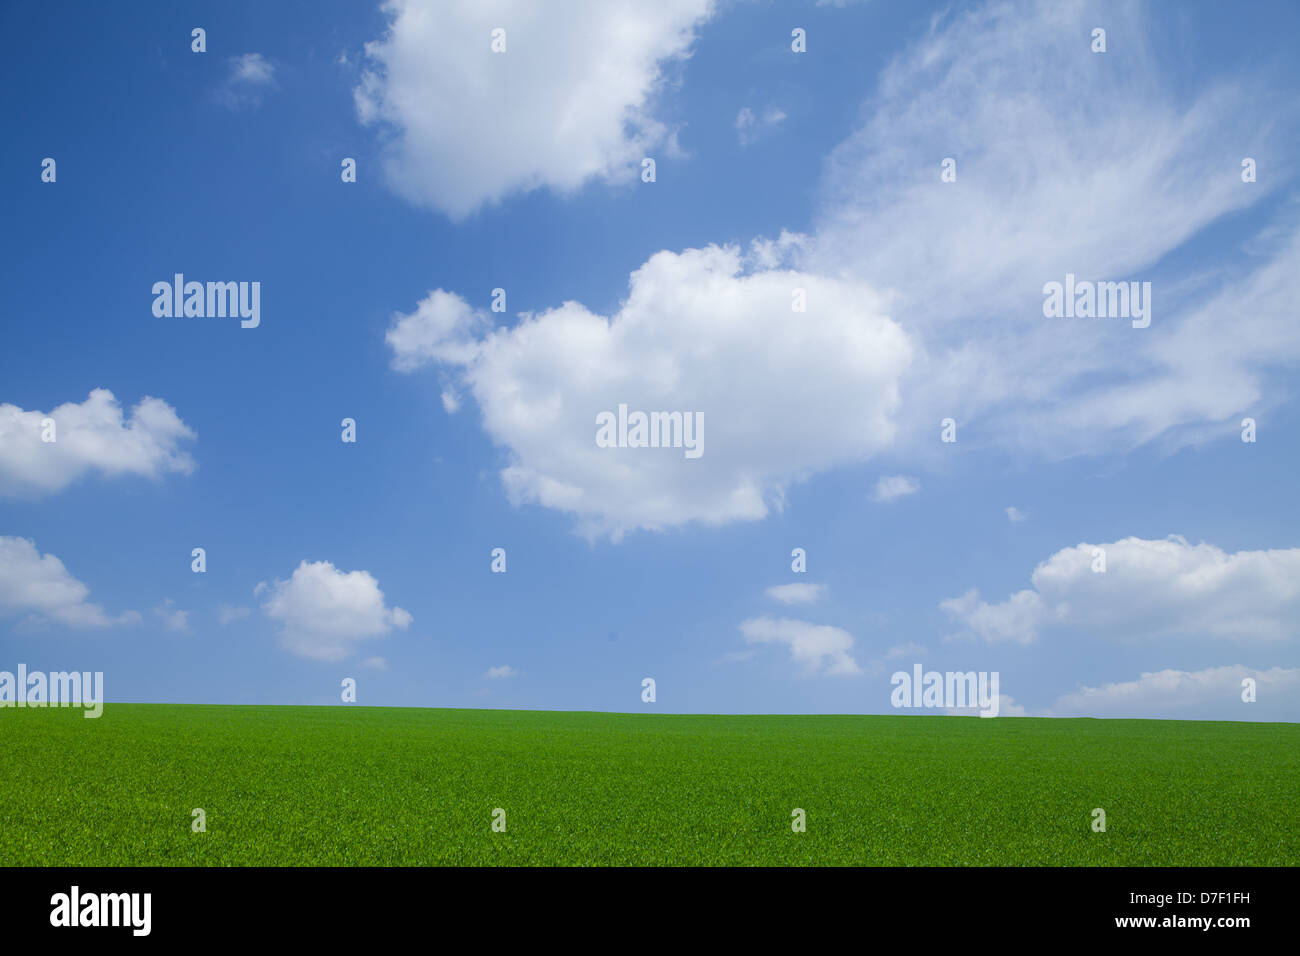 Domaine des nouvelles céréales vert paysage rural, avec des nuages blancs sur le ciel bleu Banque D'Images